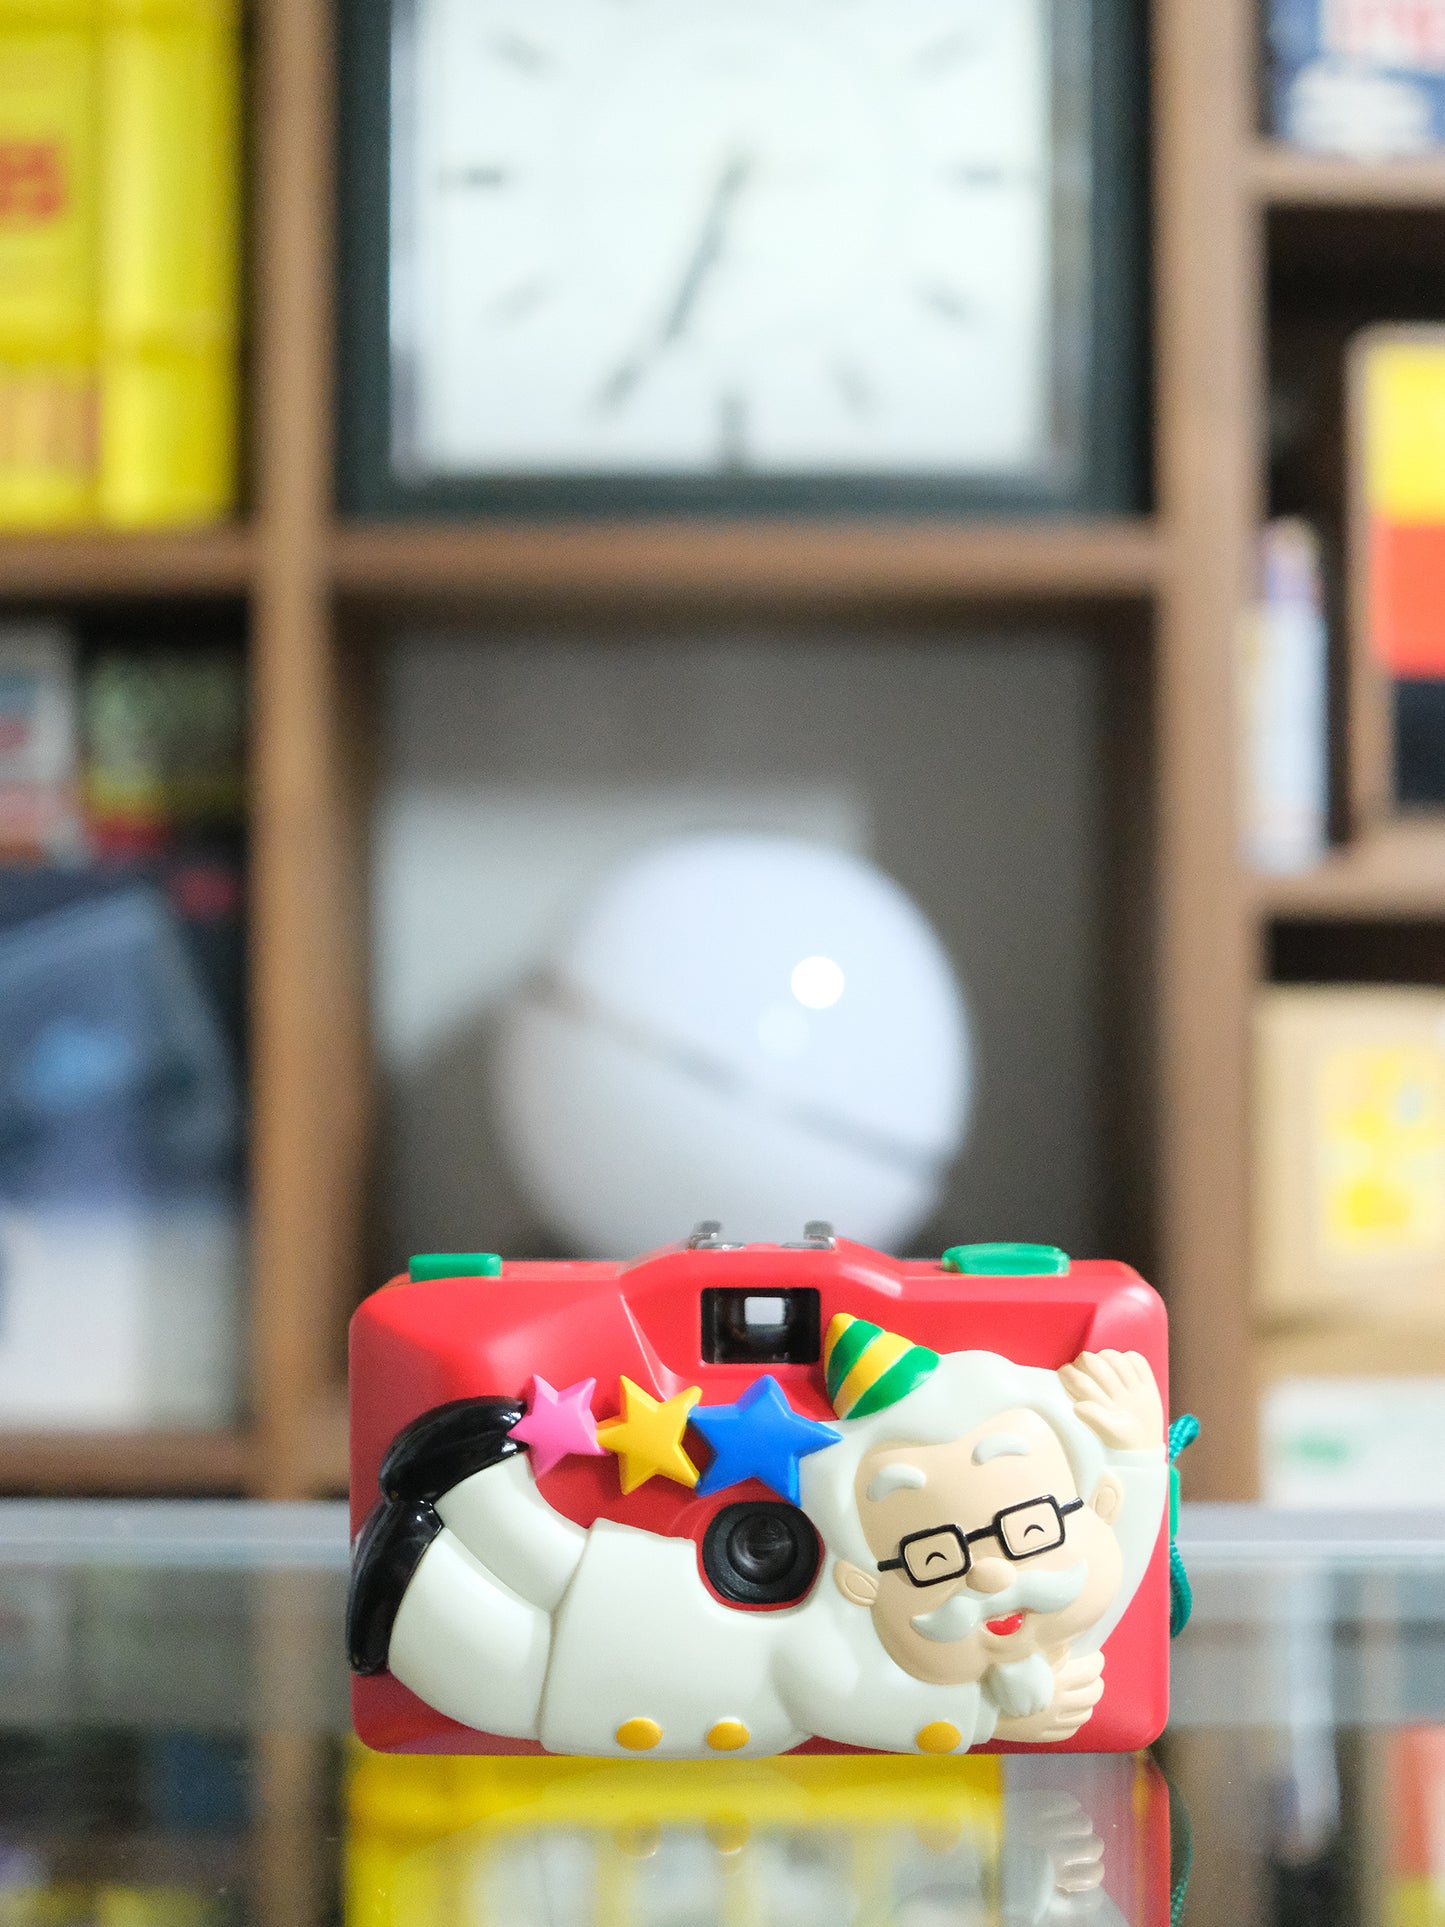 日本 KFC 聖誕限定版 肯德基爺爺 桑德斯上校 35mm 菲林相機 Film Camera #2